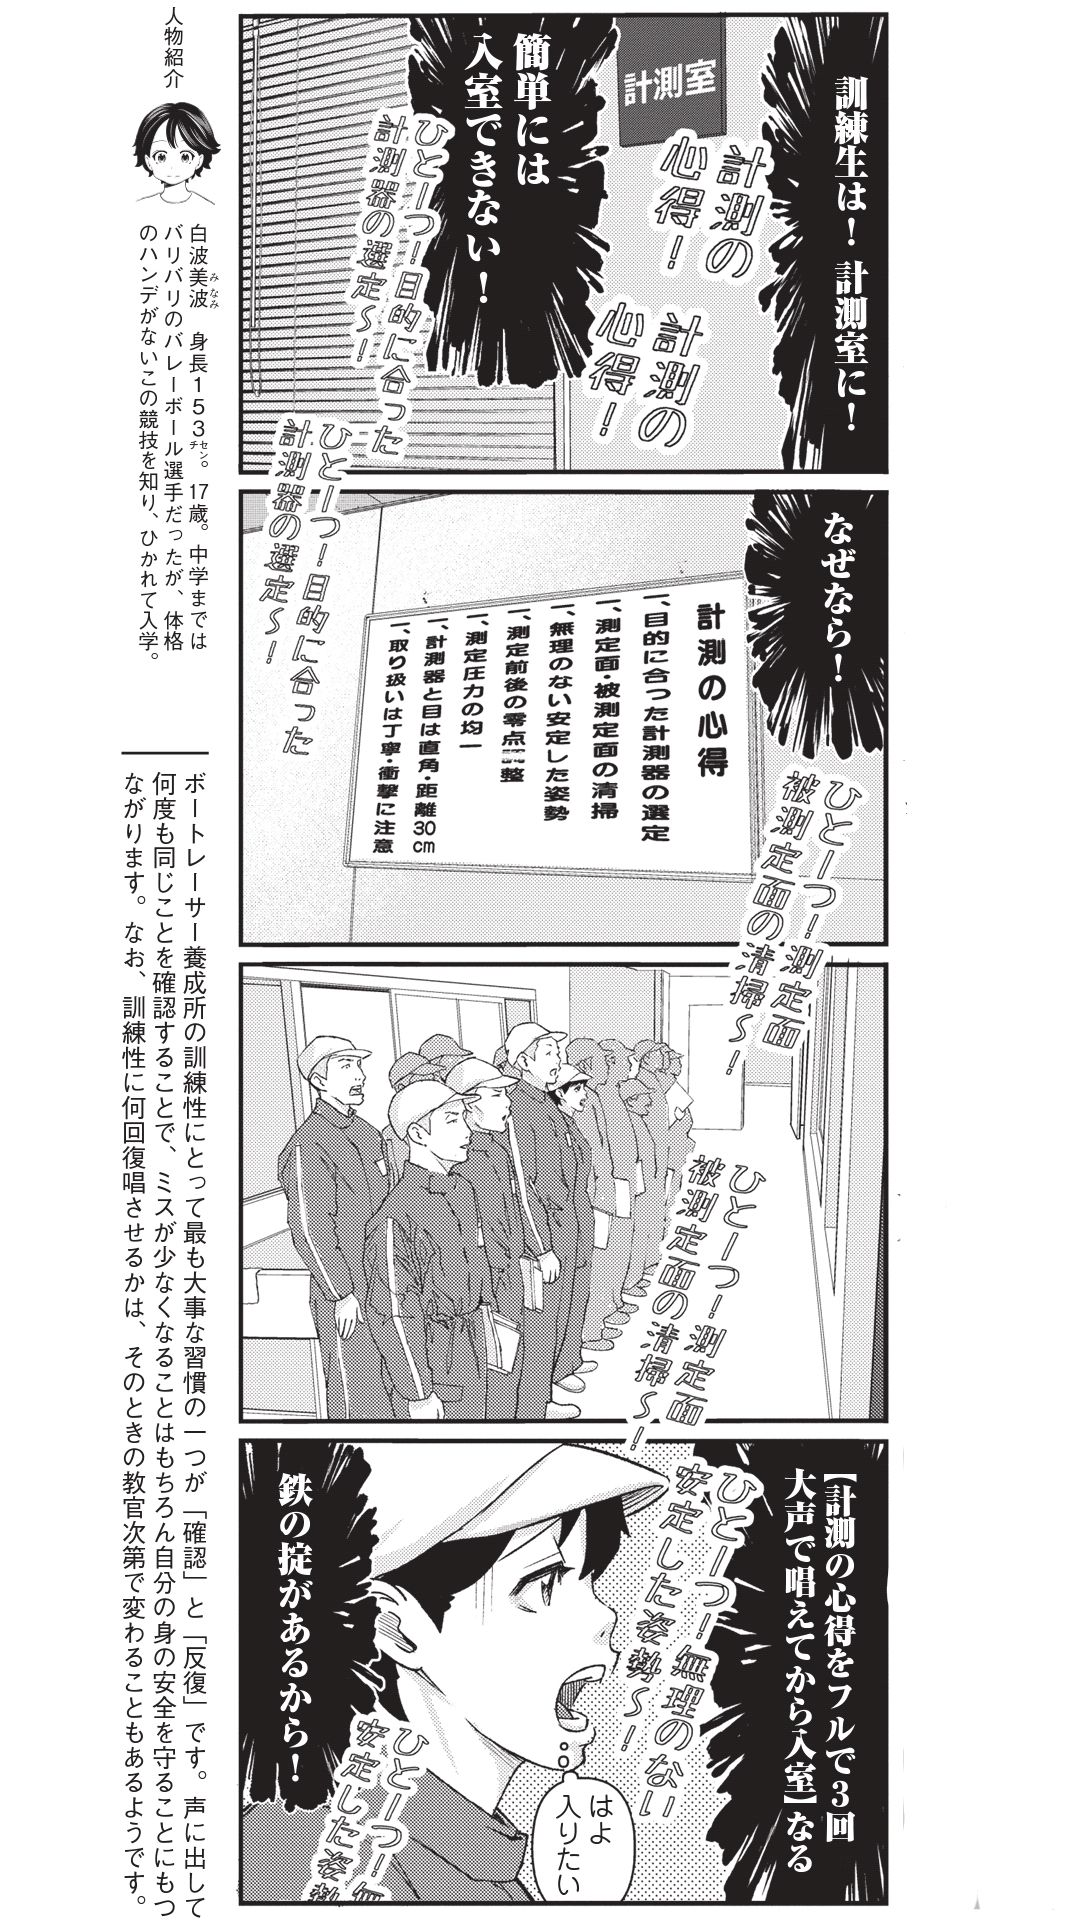 4コマ漫画『ボートレース訓練生・美波』こぼれ話「最も大事な習慣“確認”と“反復”」の画像